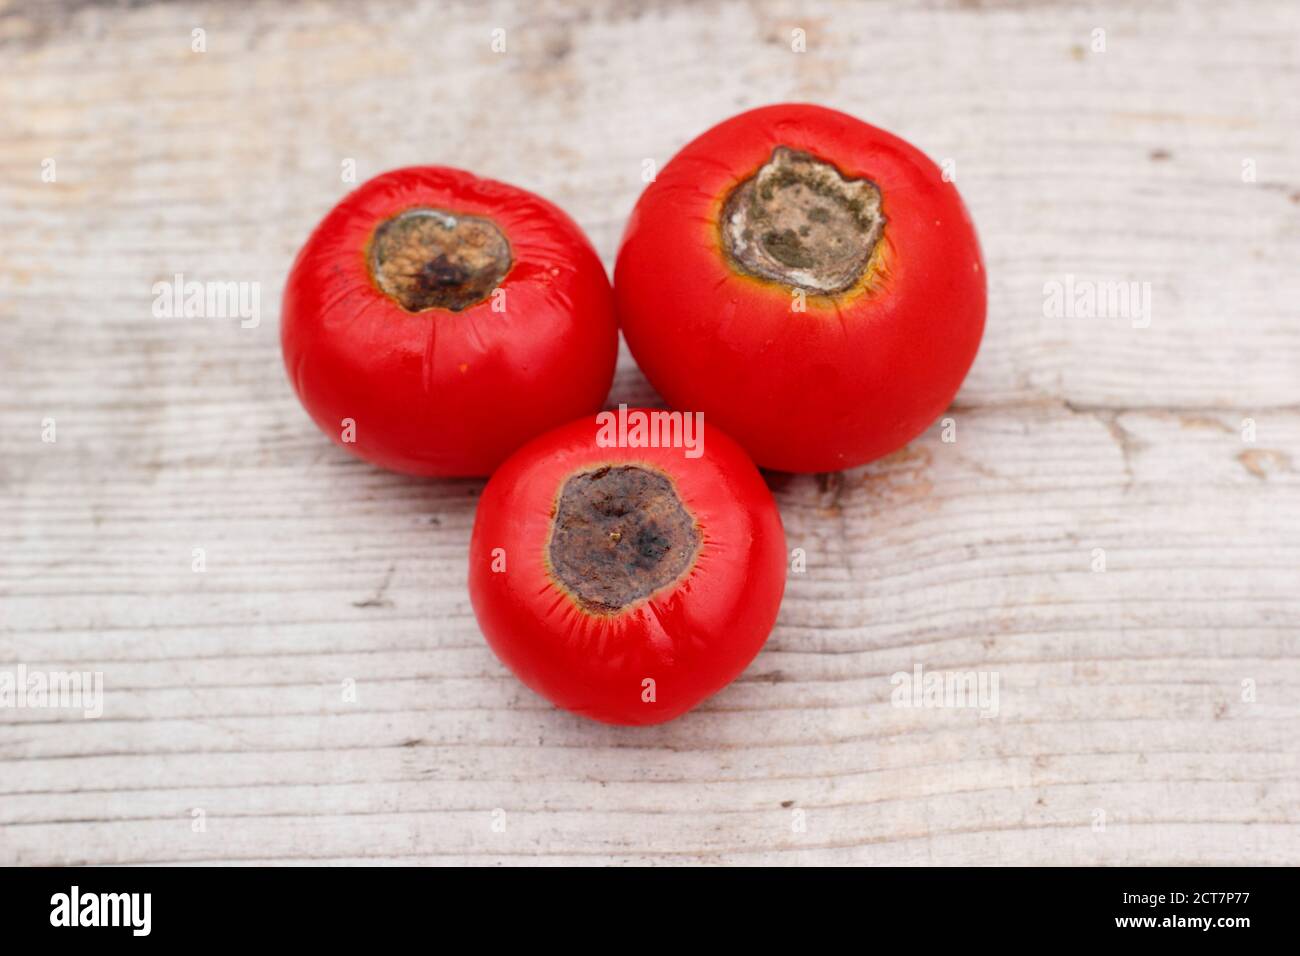 Selbstgewachsene Tomaten mit Blütenendfäule, die durch Kalziummangel und damit verbundene Bewässerungsprobleme verursacht wird. Solanum lycopersicum 'Alicante'. Stockfoto